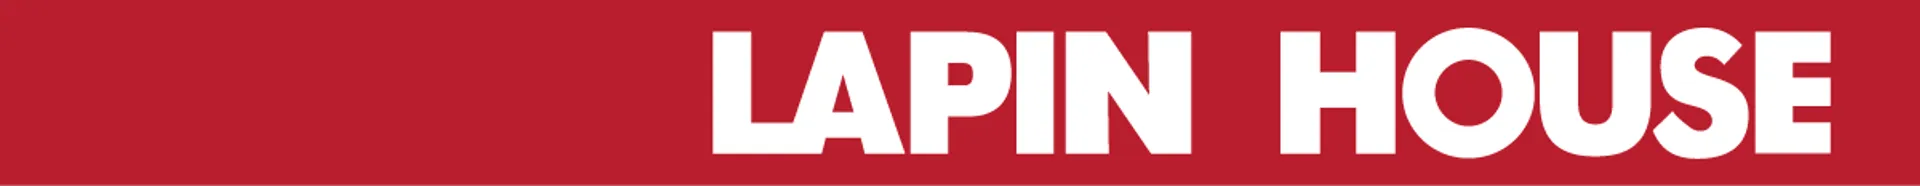 LAPIN HOUSE logo